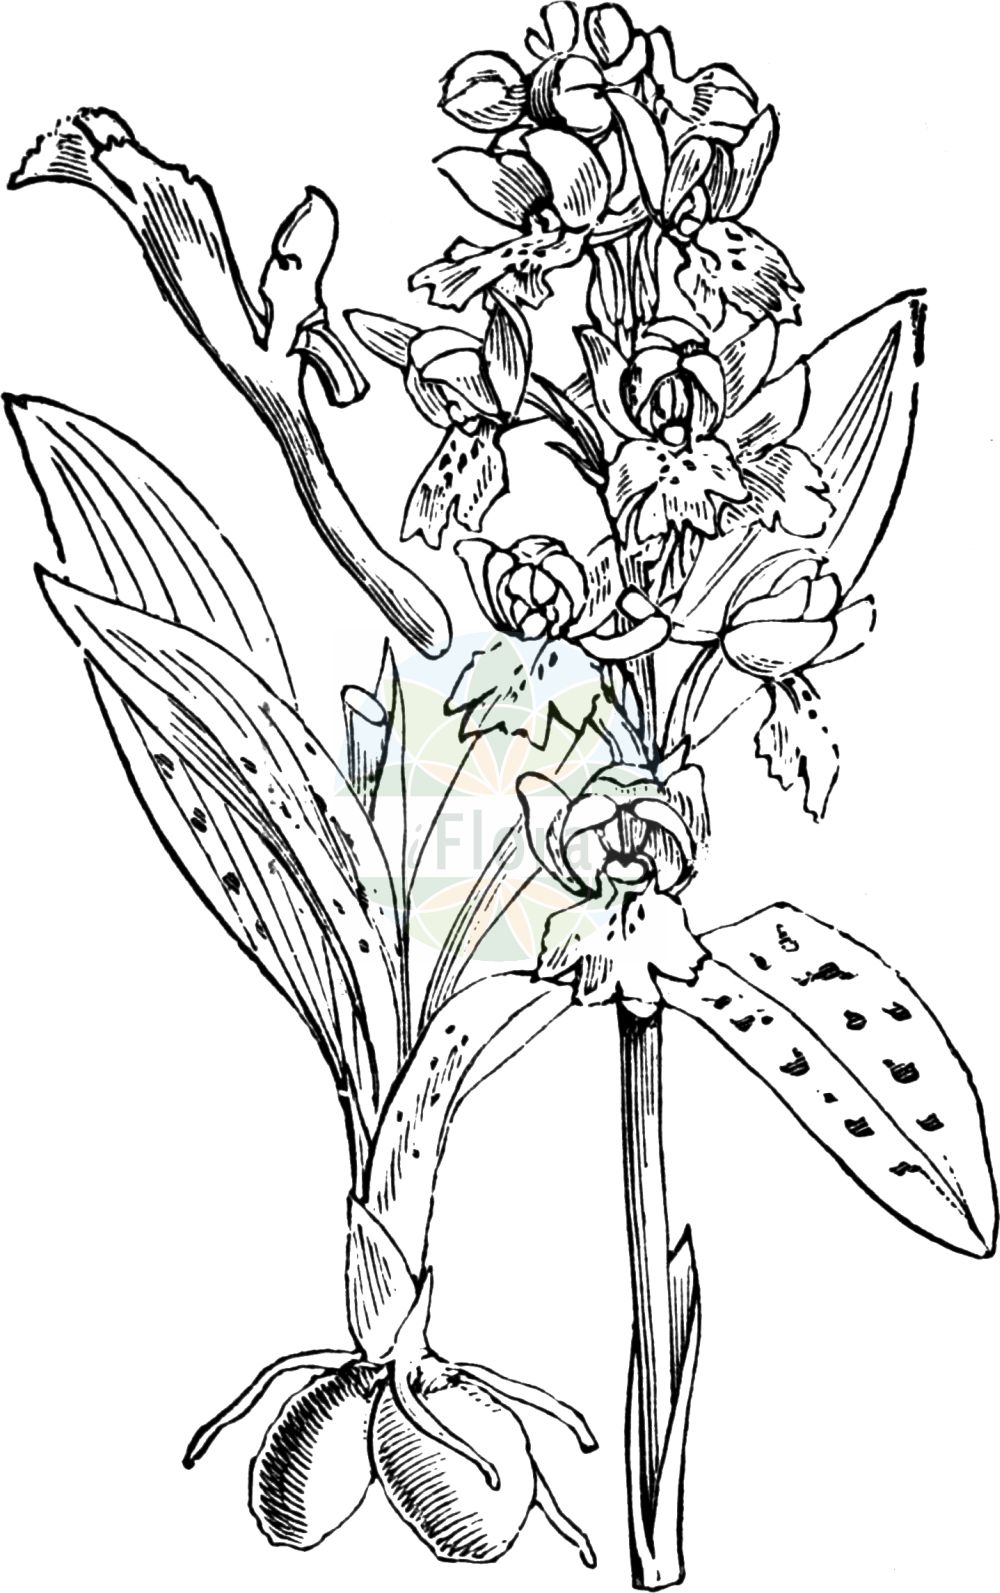 Historische Abbildung von Orchis mascula (Männliches Knabenkraut - Early-purple Orchid). Das Bild zeigt Blatt, Bluete, Frucht und Same. ---- Historical Drawing of Orchis mascula (Männliches Knabenkraut - Early-purple Orchid). The image is showing leaf, flower, fruit and seed.(Orchis mascula,Männliches Knabenkraut,Early-purple Orchid,Androrchis mascula,Orchis mascula,Orchis morio var. mascula,Maennliches Knabenkraut,Kuckucks-Knabenkraut,Early-purple Orchid,Blue Butcher,Blue Butcher Orchid,Male Orchid,Orchis,Knabenkraut,Orchidaceae,Knabenkrautgewächse,Orchid family,Blatt,Bluete,Frucht,Same,leaf,flower,fruit,seed,Fitch et al. (1880))